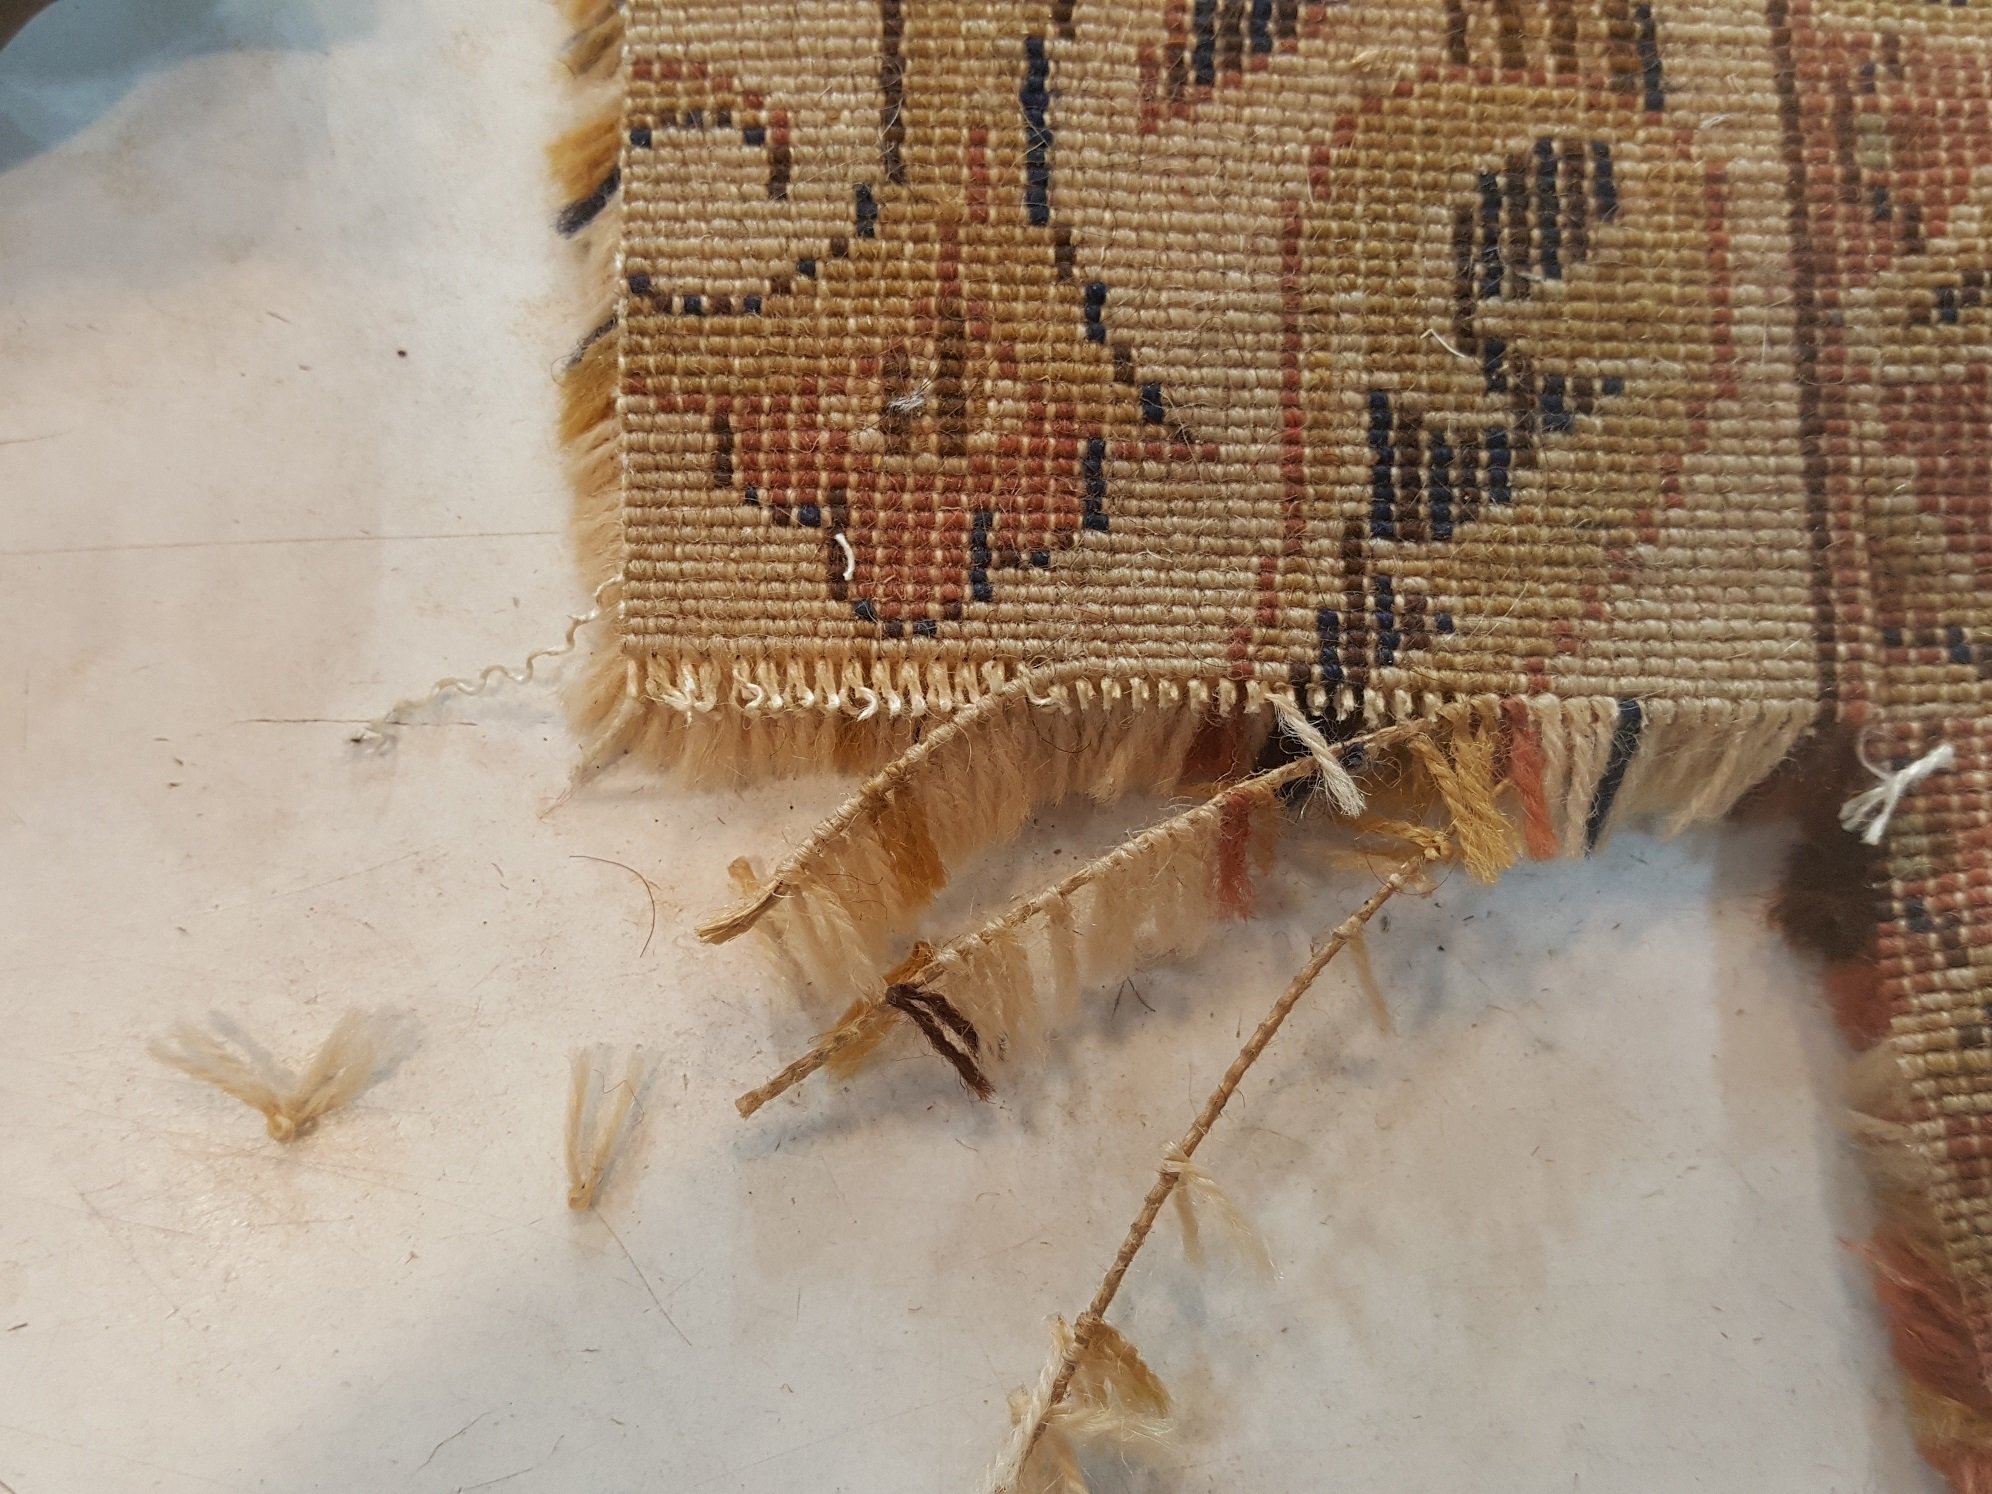 שטיח מכונה אדורוס גזור כדי ללמוד איך בנוי